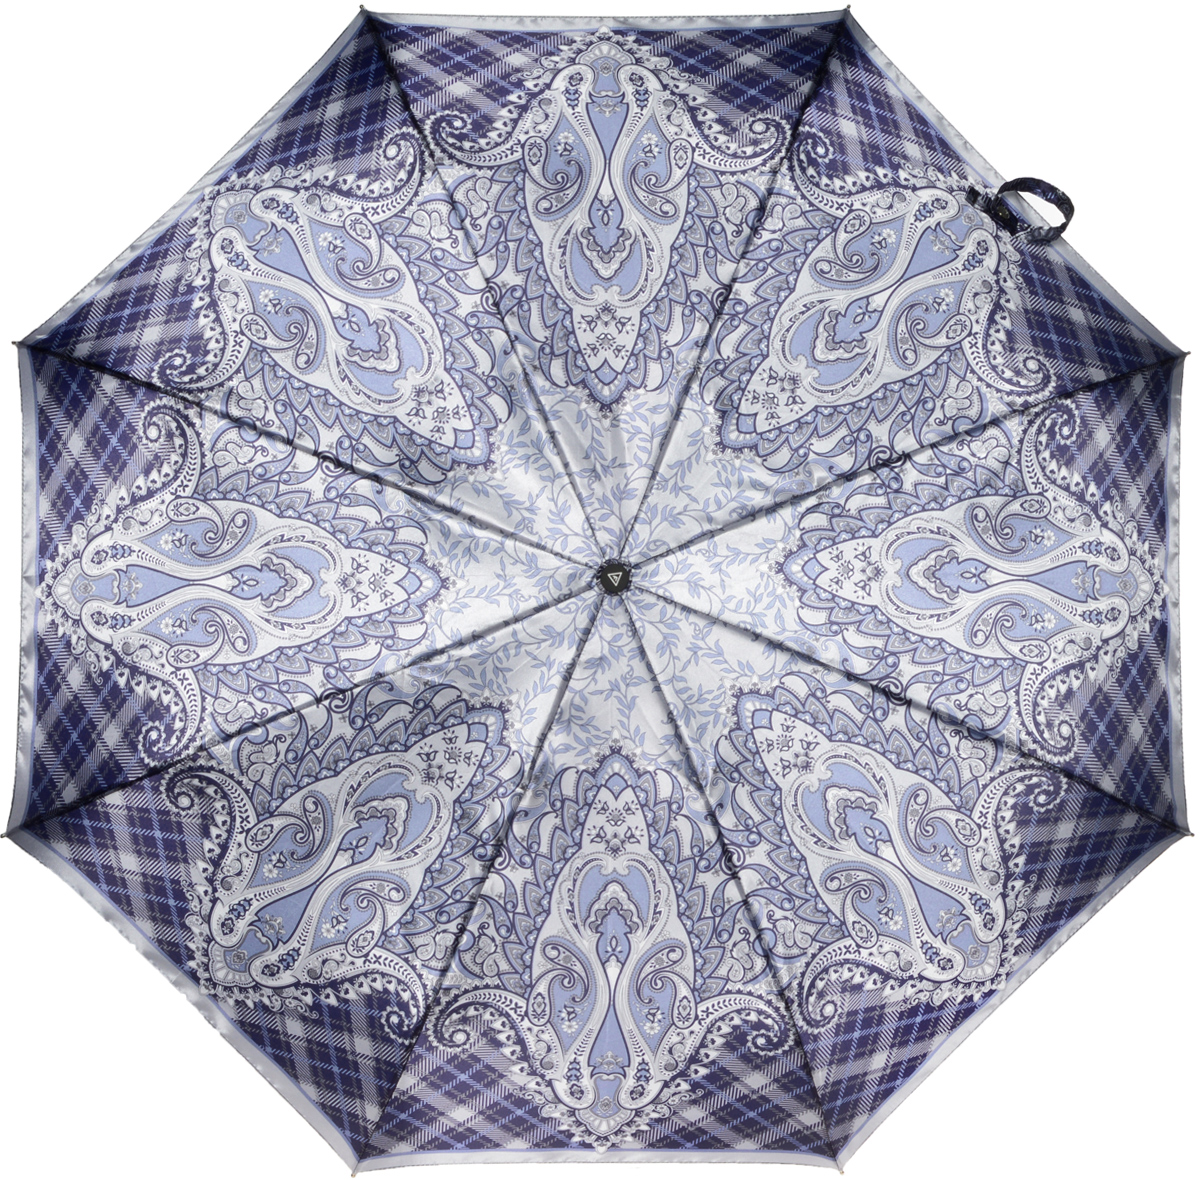 Зонт женский Fabretti, полный автомат, 3 сложения, цвет: серый, синий, голубой. S-16100-1